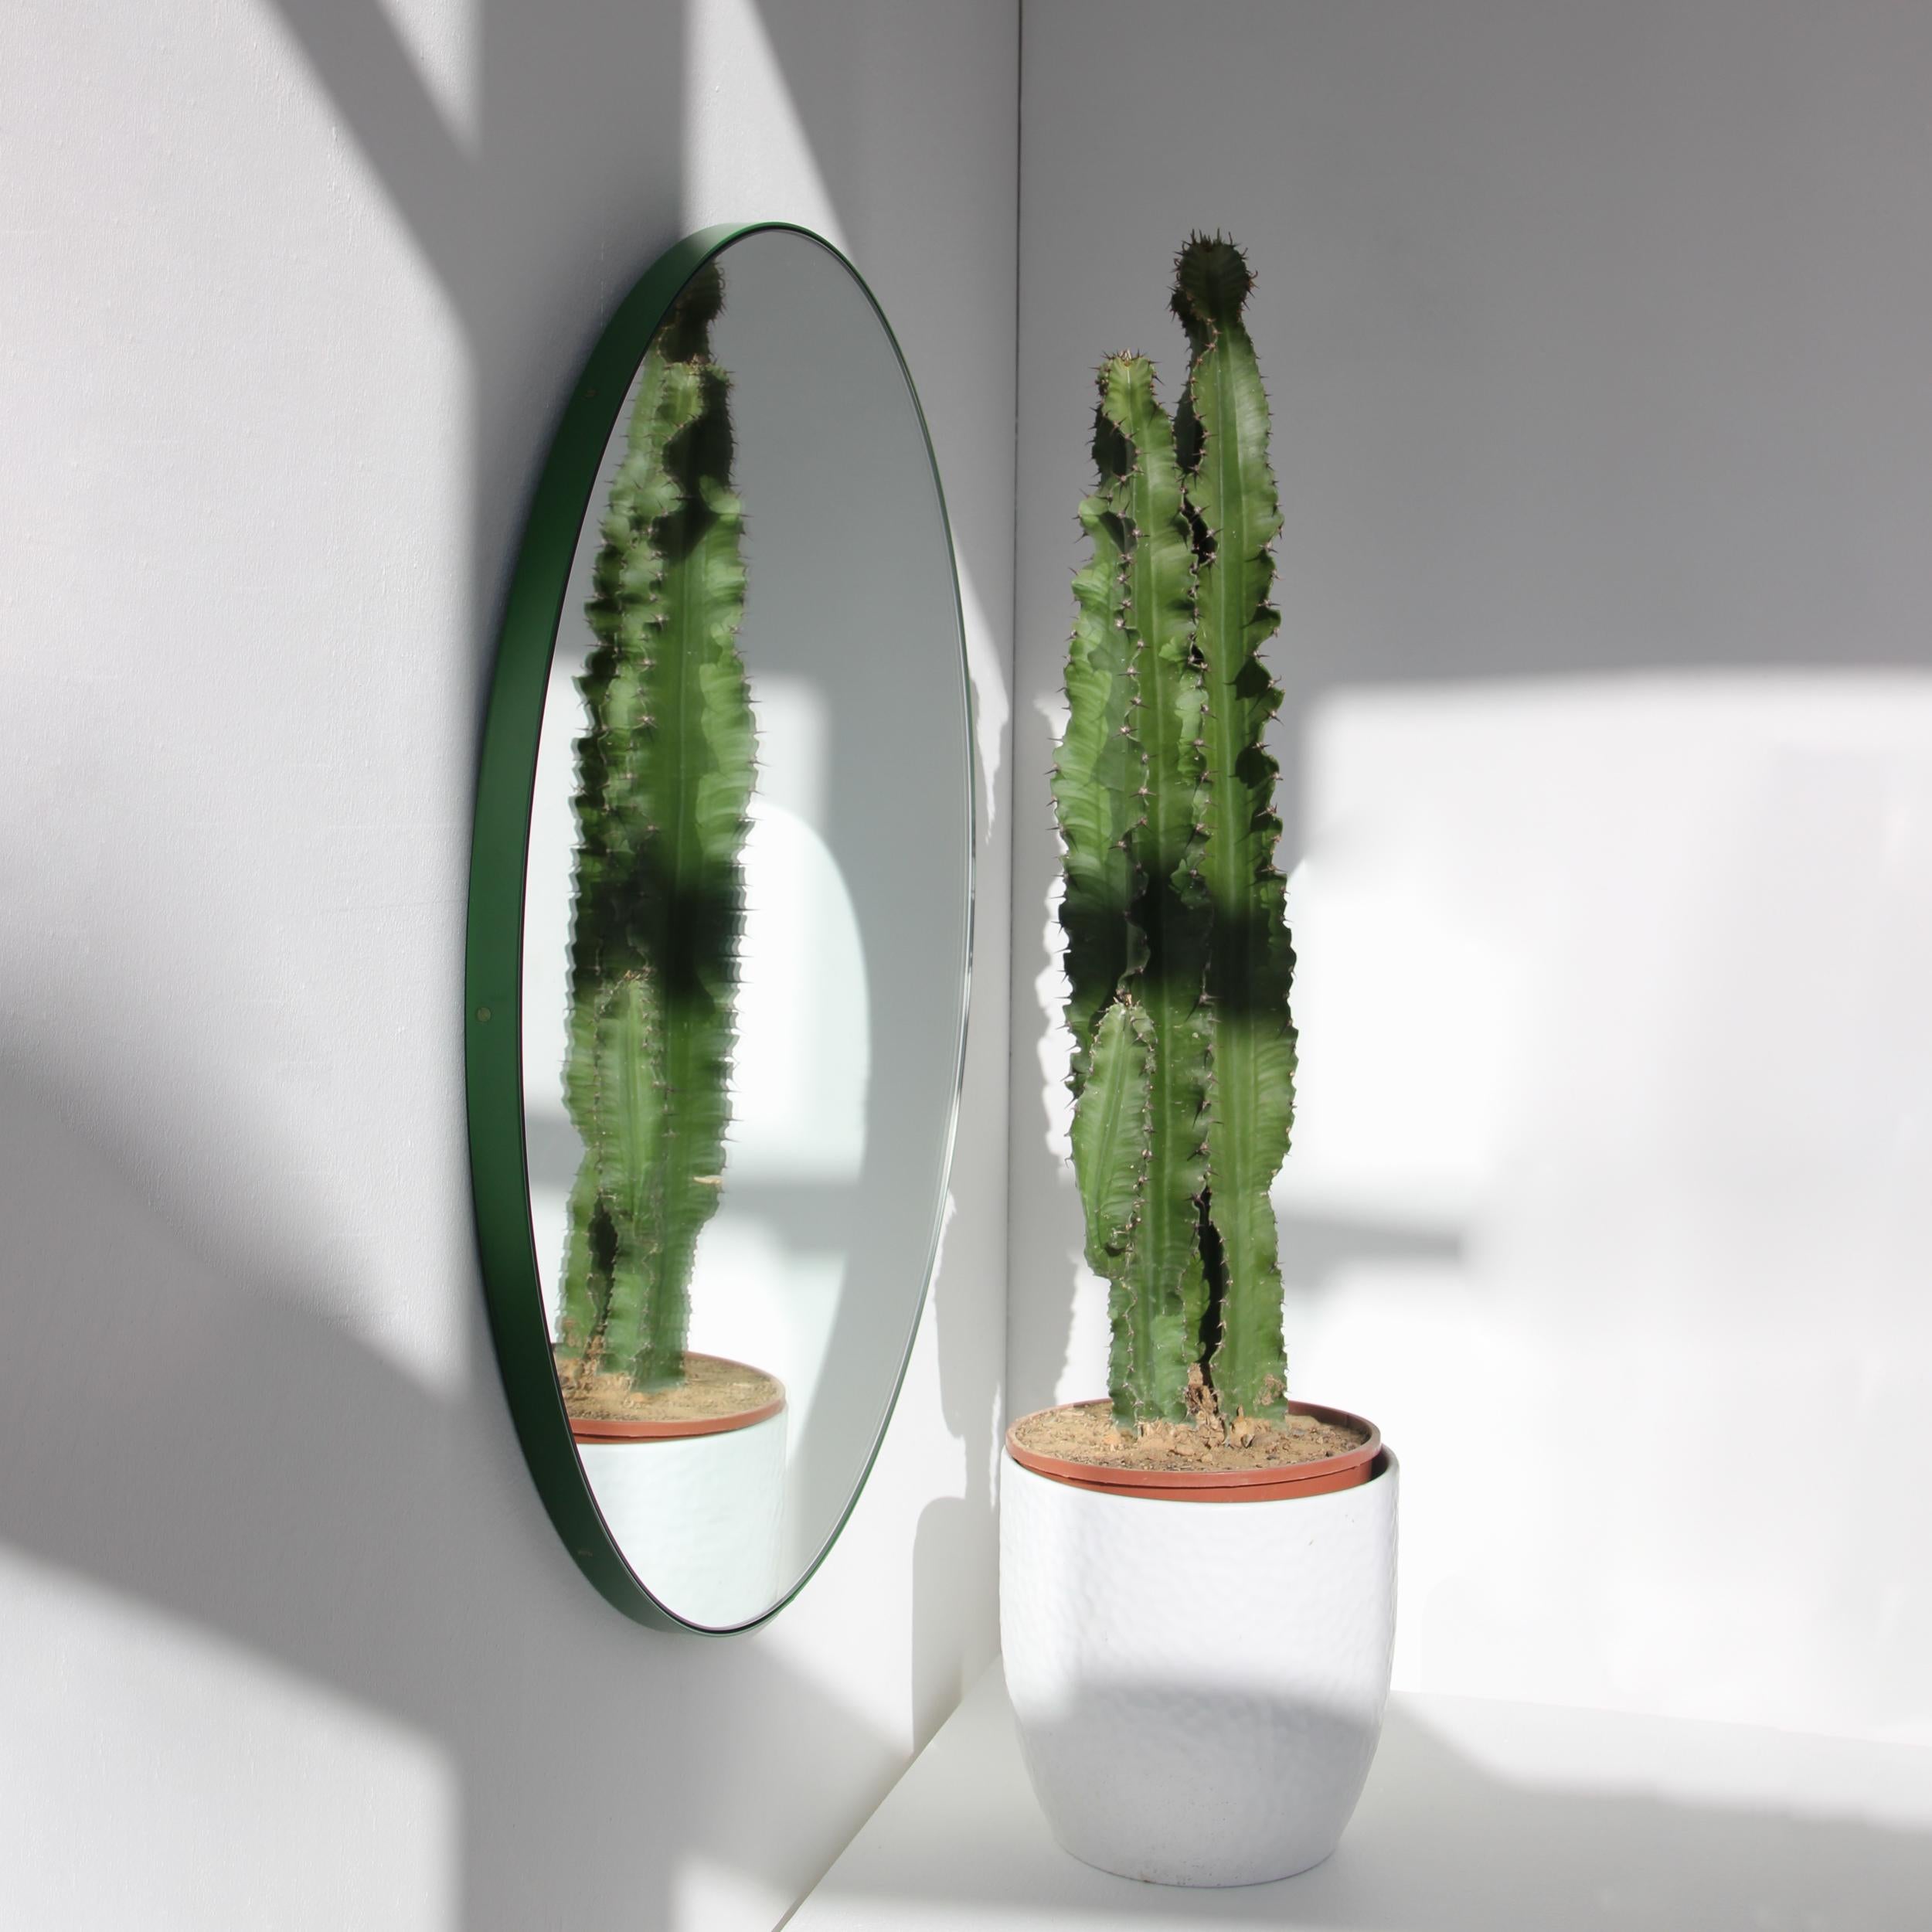 British Orbis Round Modern Mirror with Green Frame, Customisable, Medium For Sale